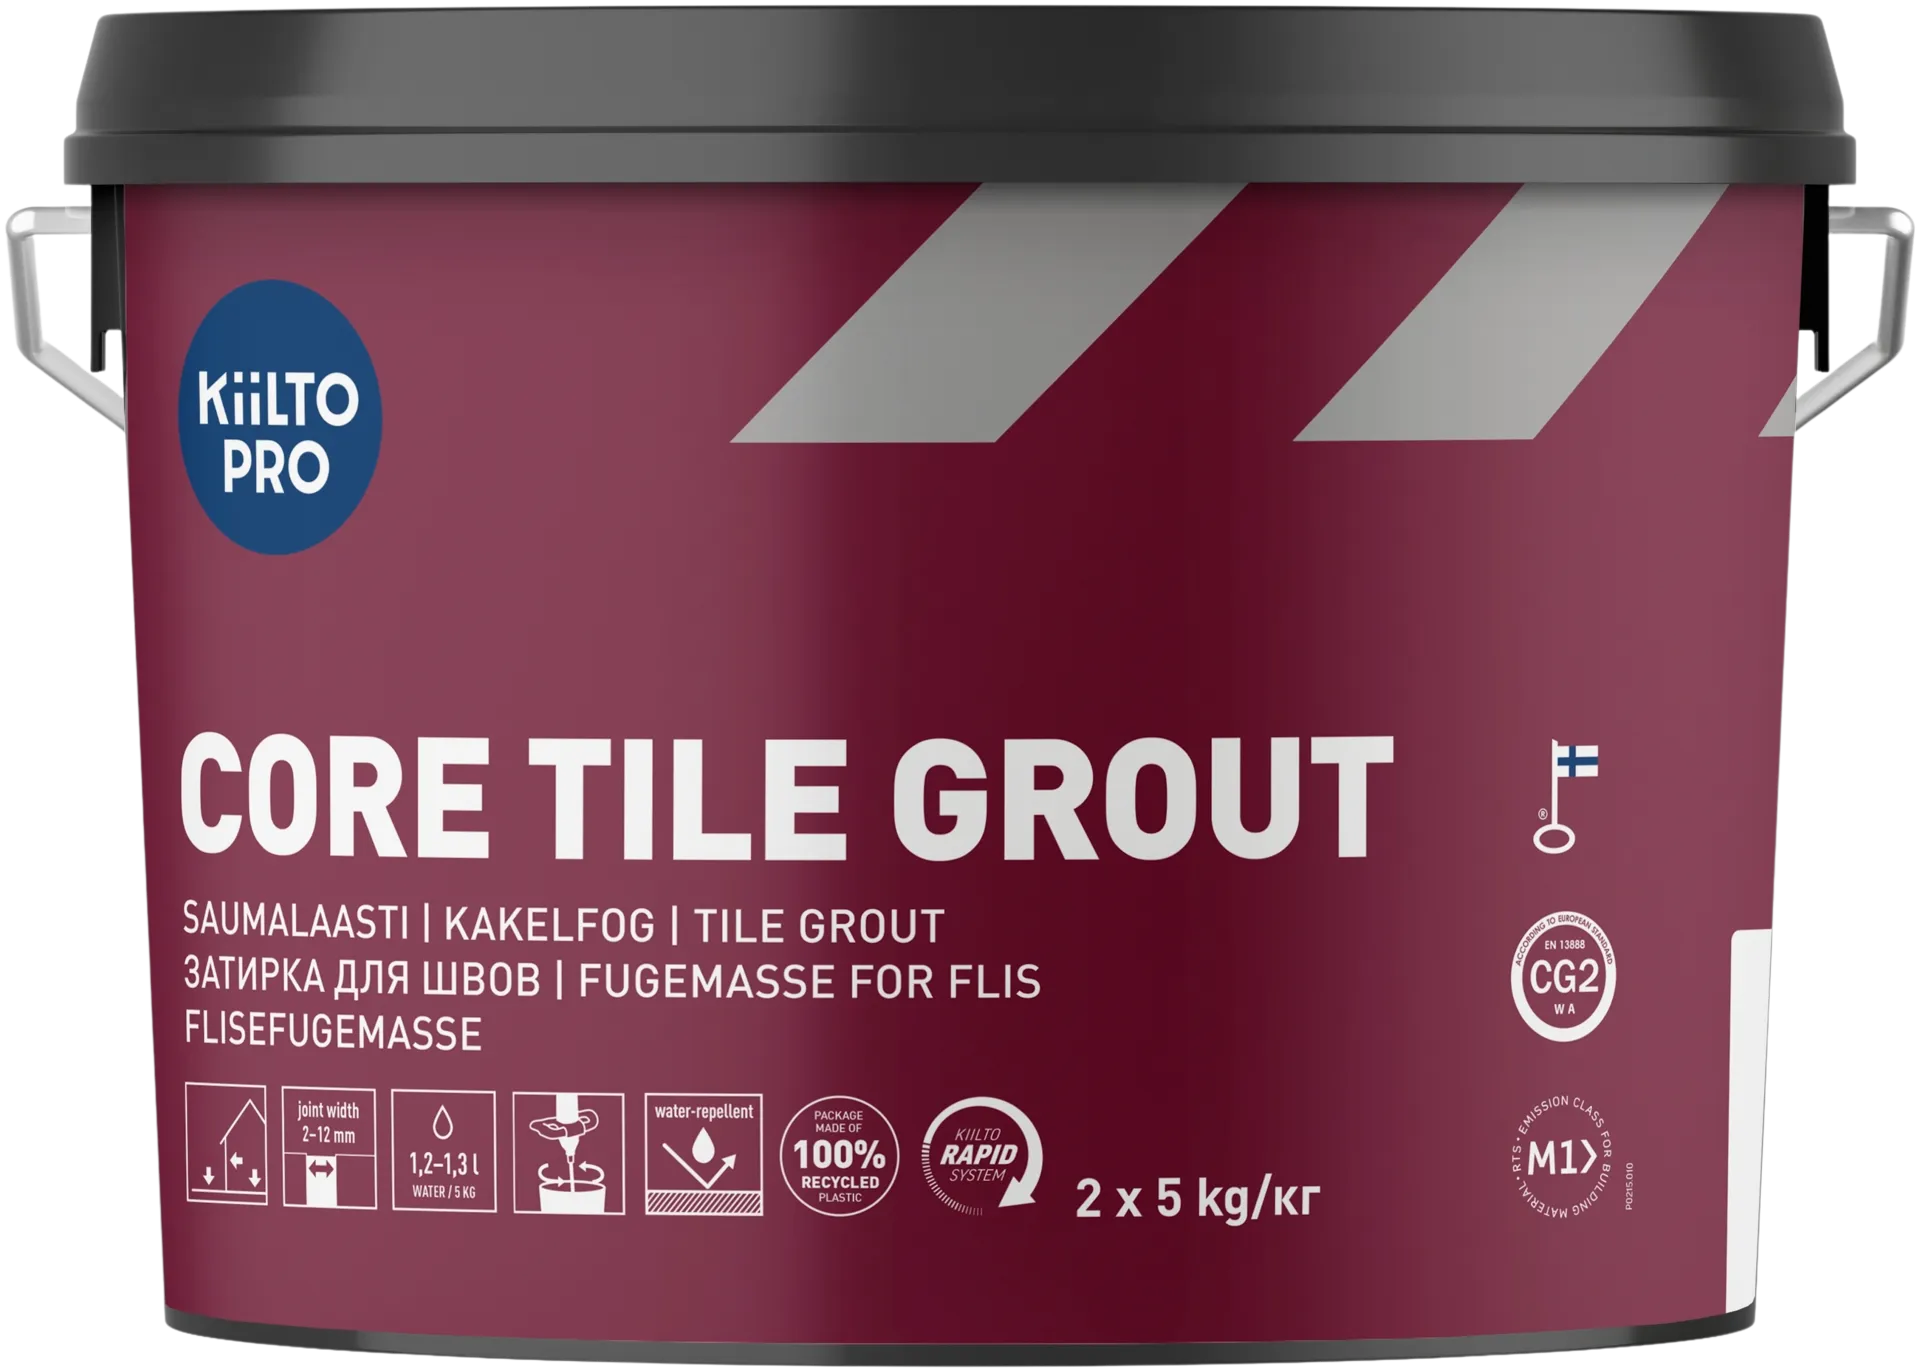 Kiilto Pro Core Tile grout saumalaasti 450 graphite black  10 kg